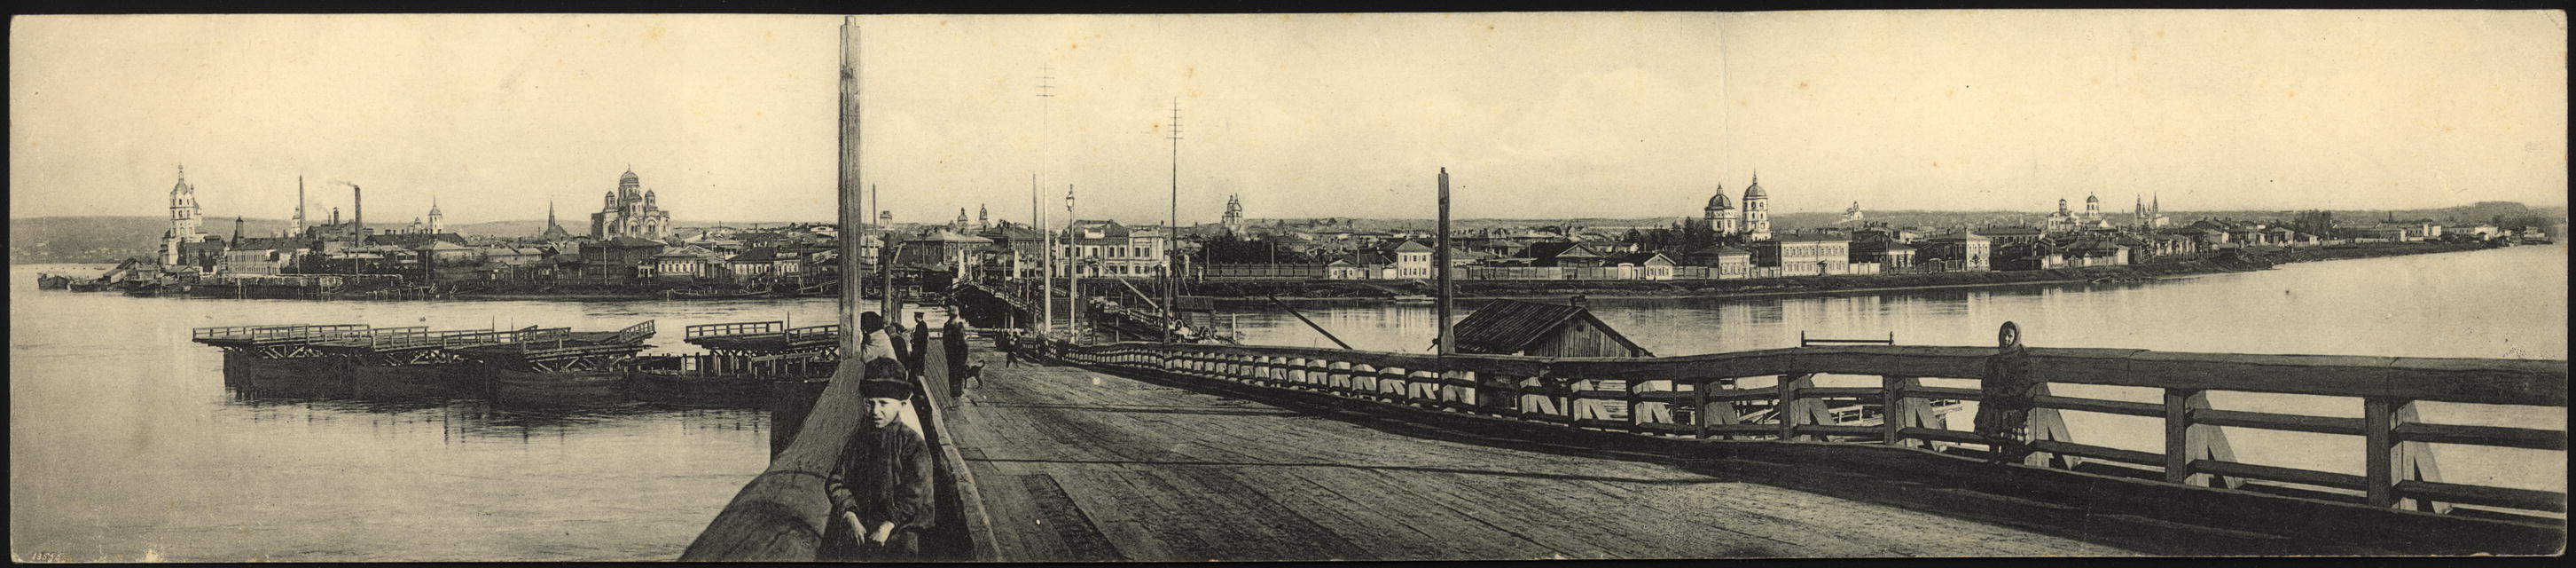 Иркутска 19 век мост Иркутск